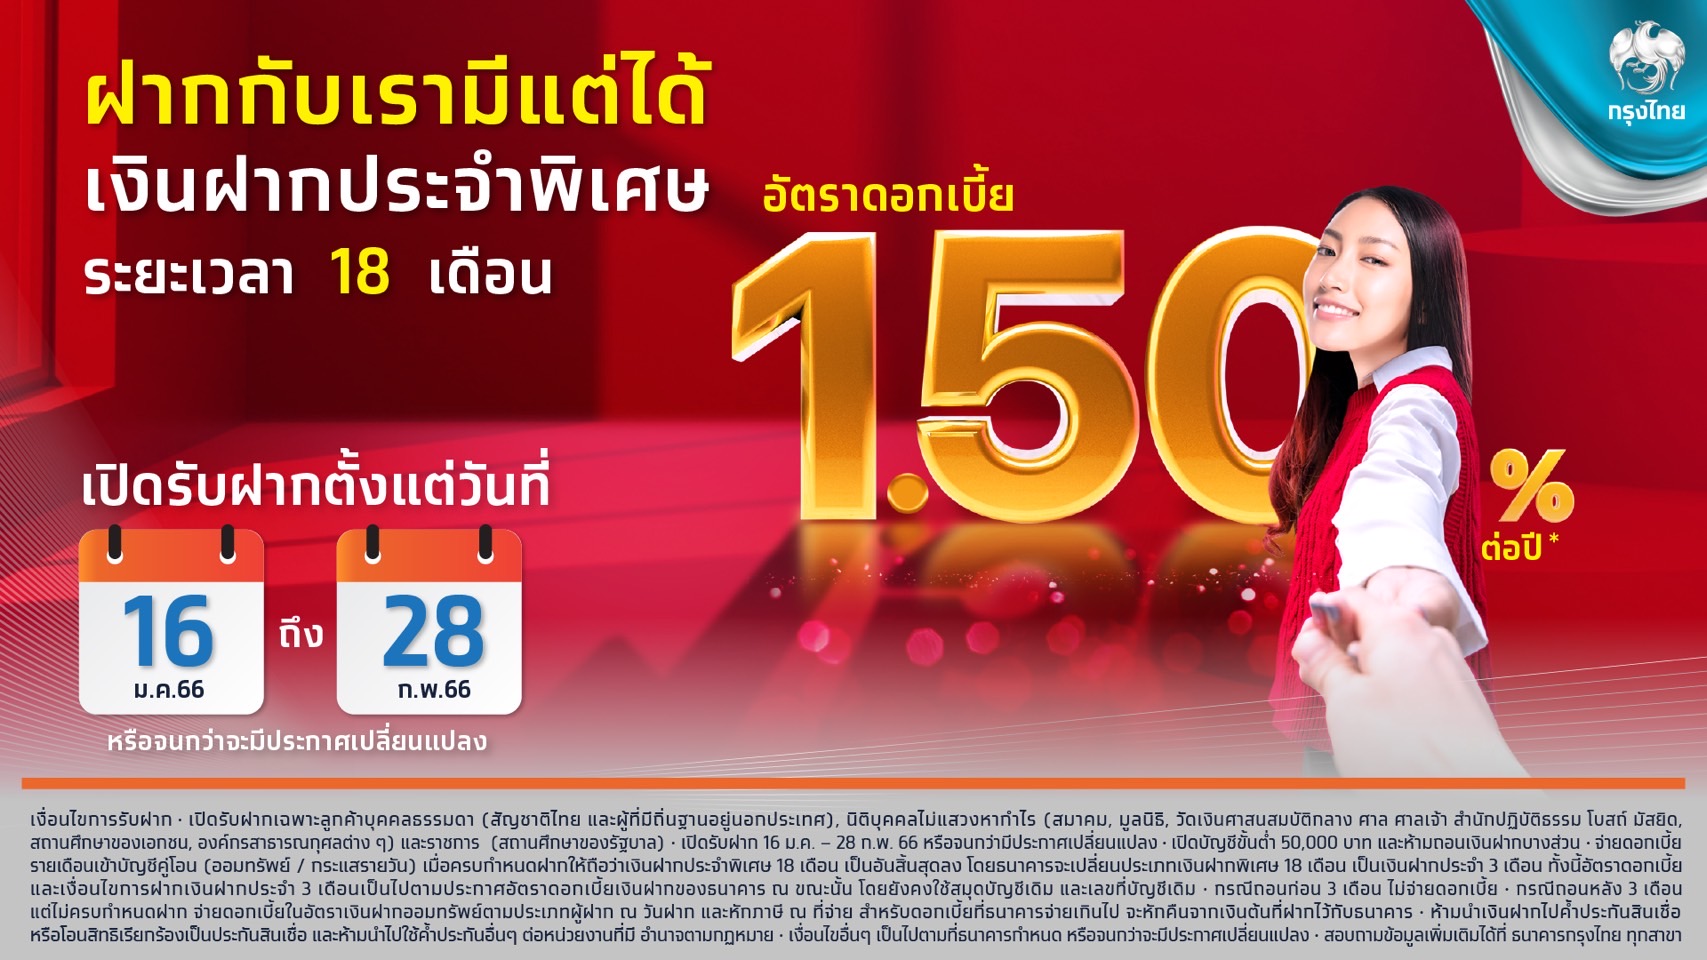 กรุงไทย หนุนคนไทย ออกเงินฝากประจำพิเศษ 18 เดือน ดอกเบี้ยสูง 1.5% ต่อปี -  Thaipublica